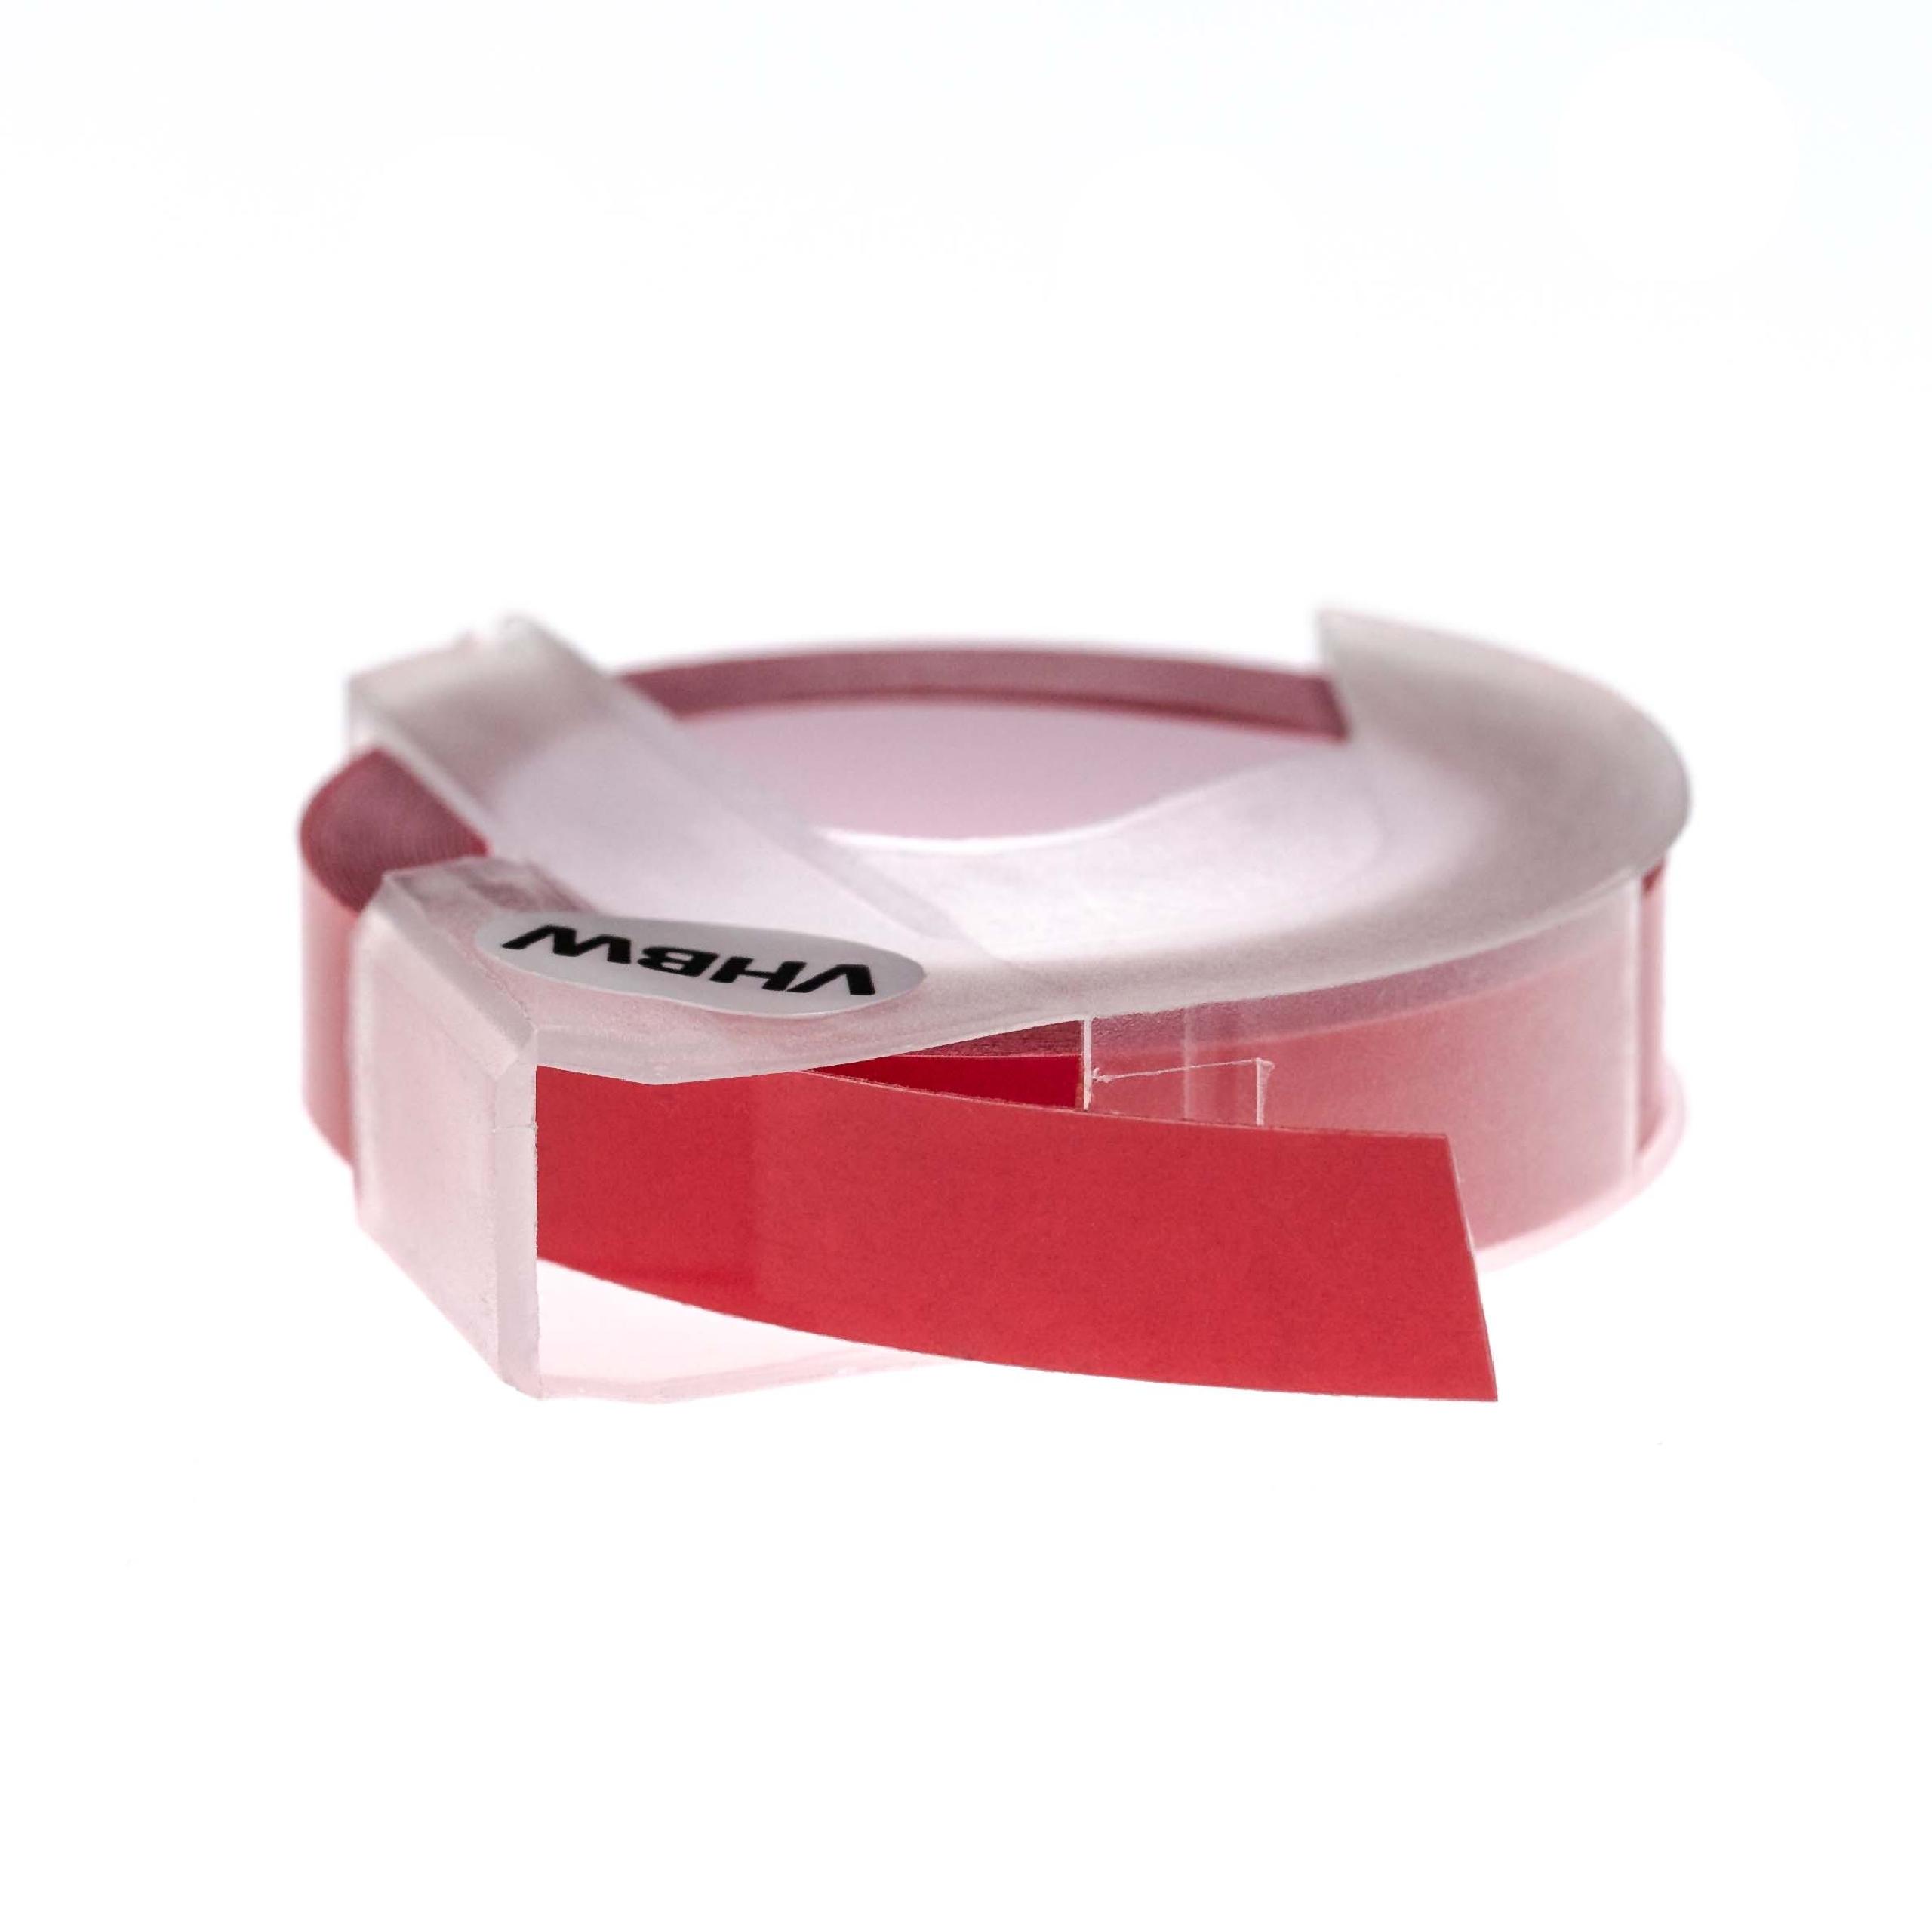 Casete cinta relieve 3D Casete cinta escritura reemplaza Dymo 0898120, S0898120 Blanco su Rosa oscuro